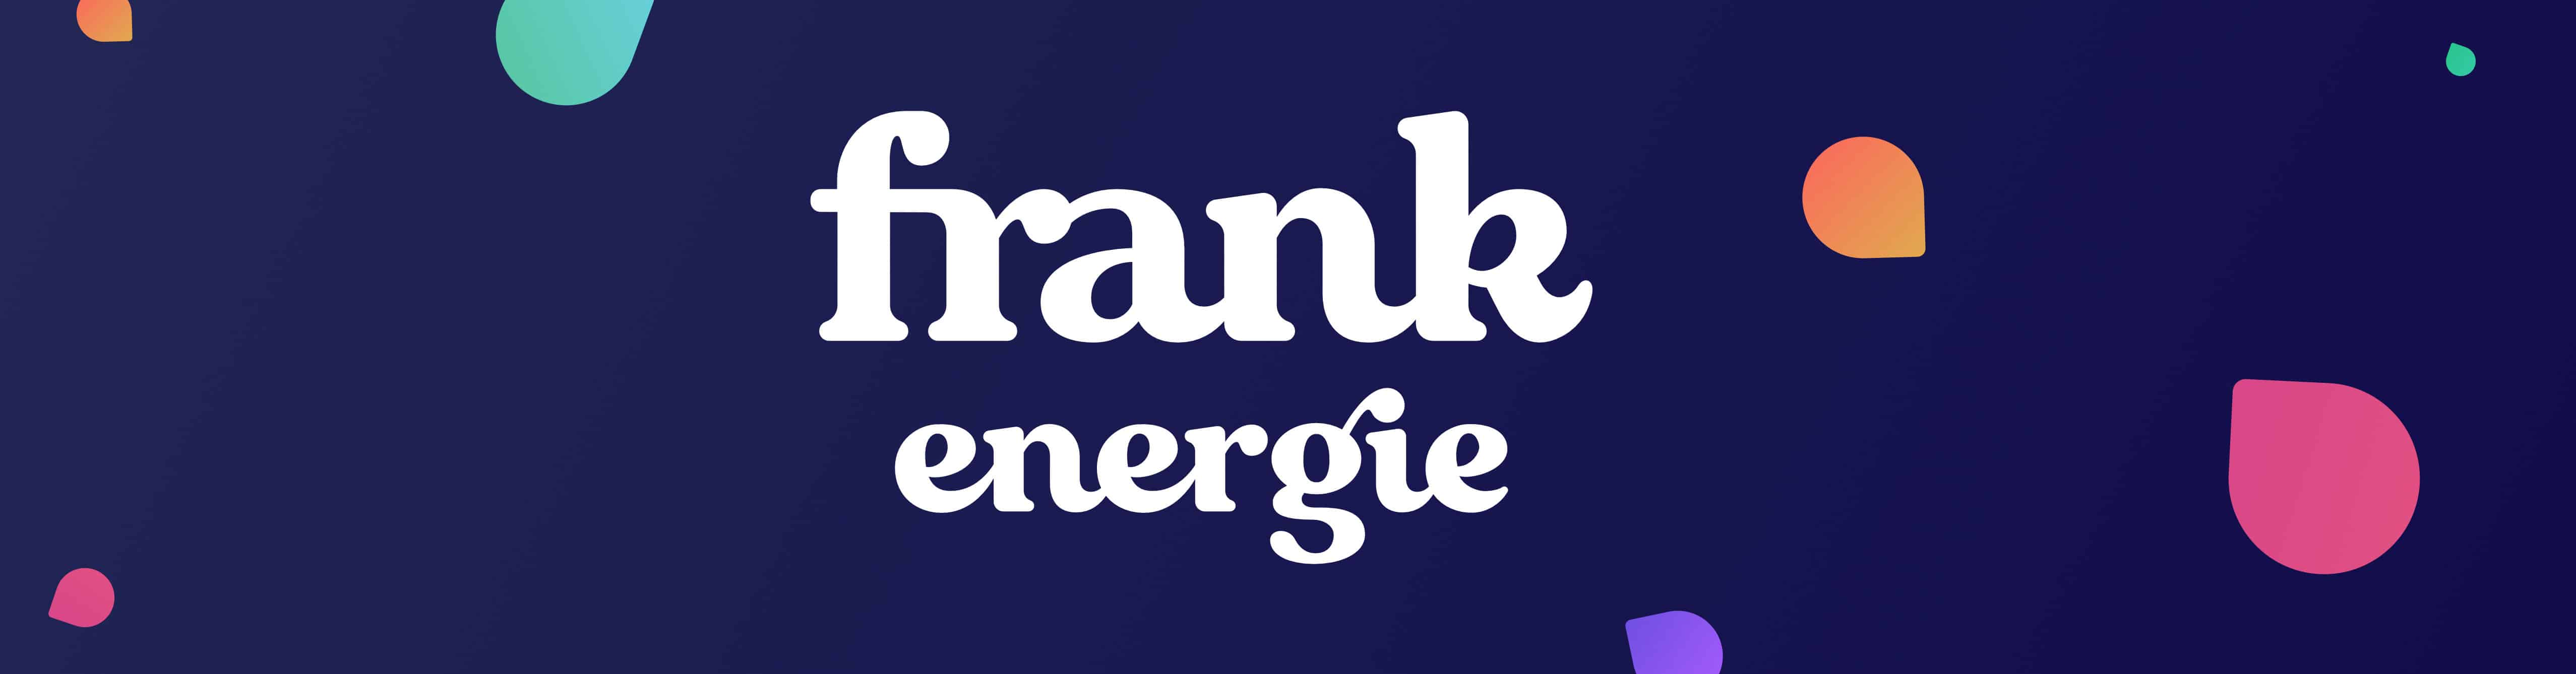 Frank Energie header